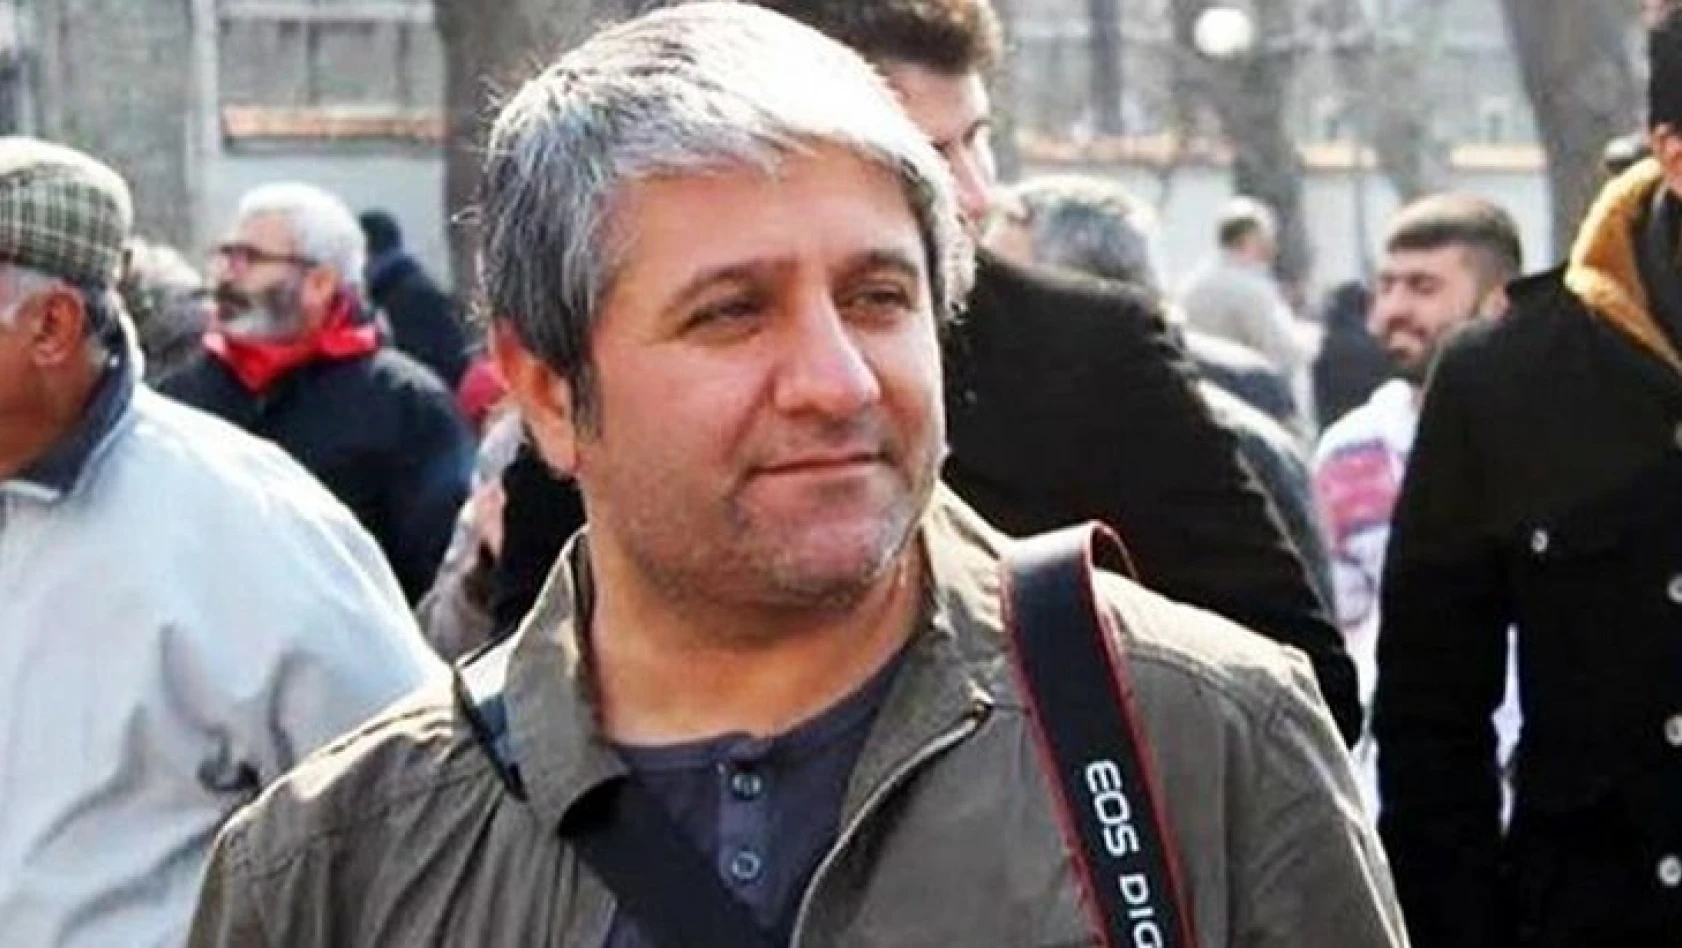 Yurt Gazetesi Genel Yayın Yönetmeni gözaltına alındı